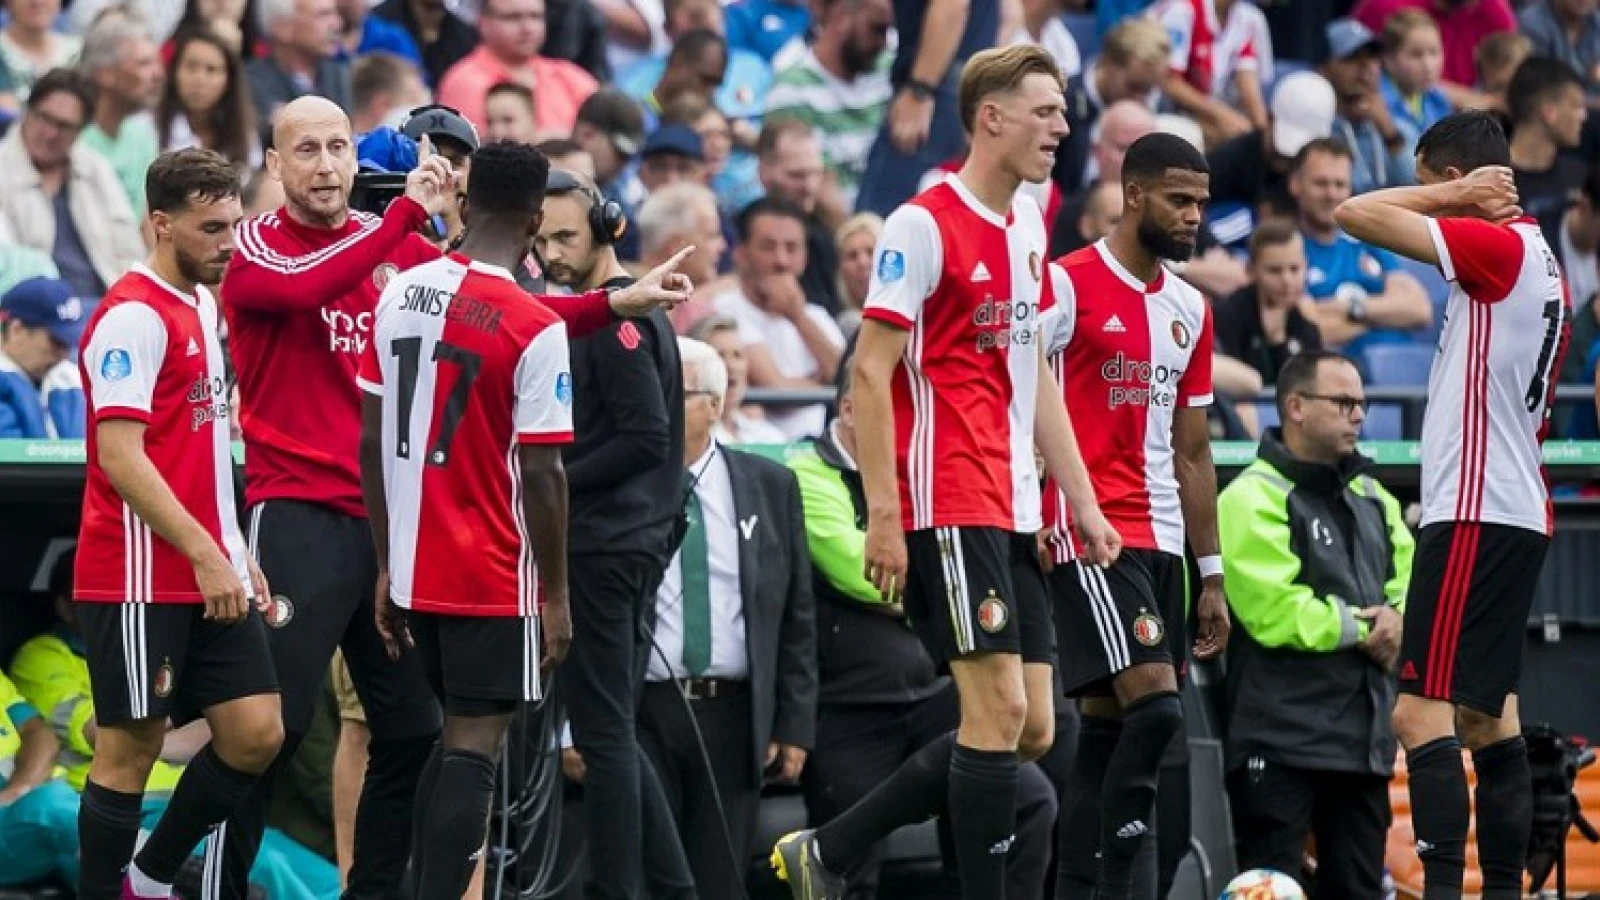 Zorgen om Feyenoord: 'Krijg je de tranen van in je ogen'